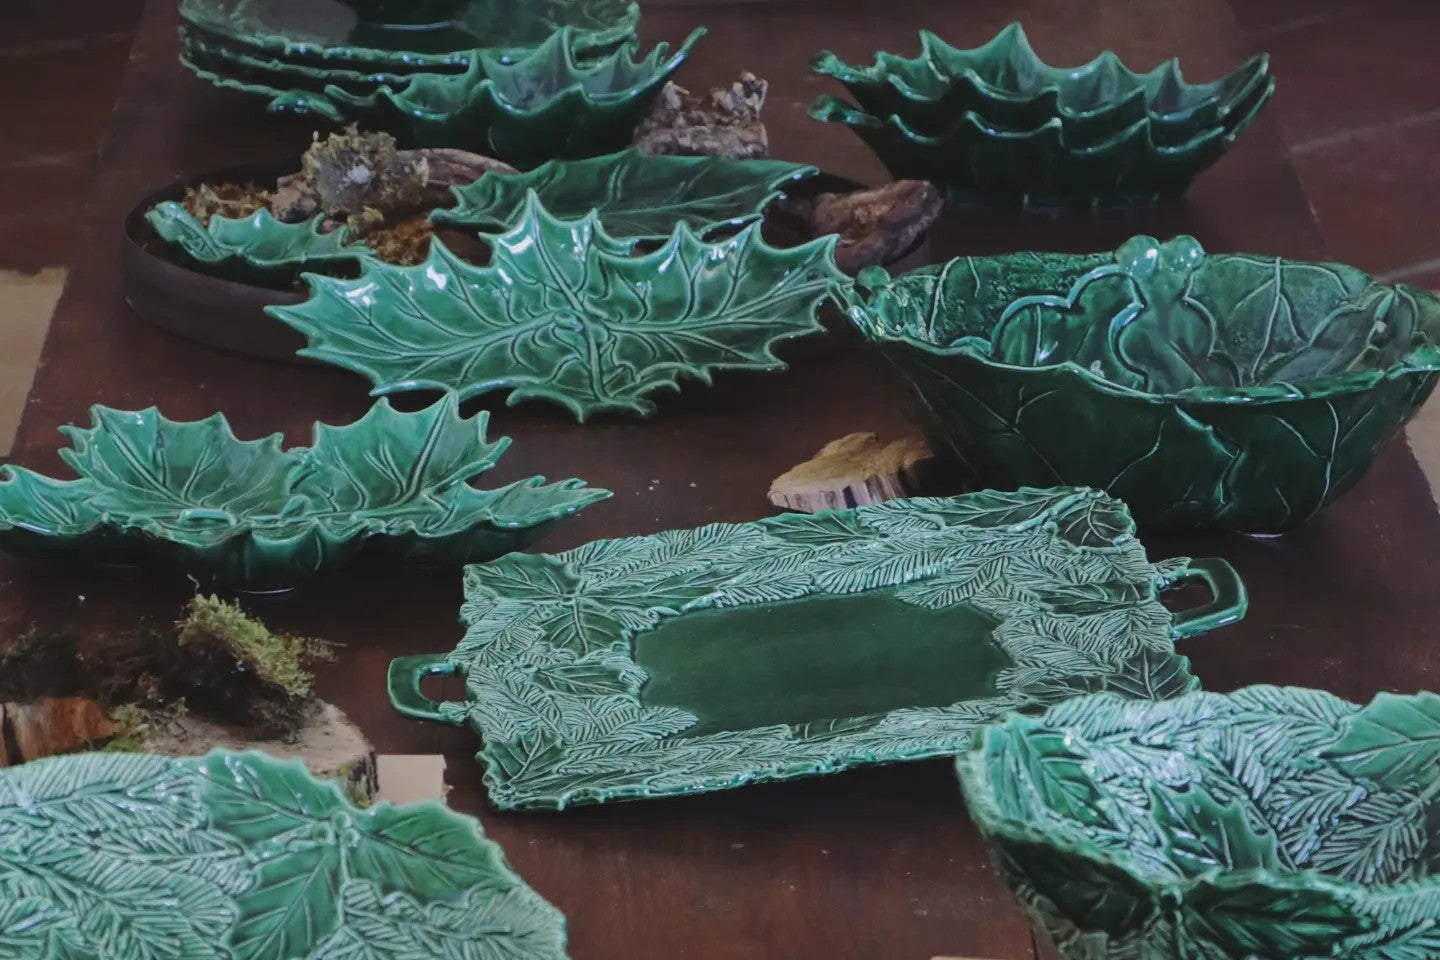 Bolo Basso Grande in ceramica, Aghi e Agrifoglio, colore: verde